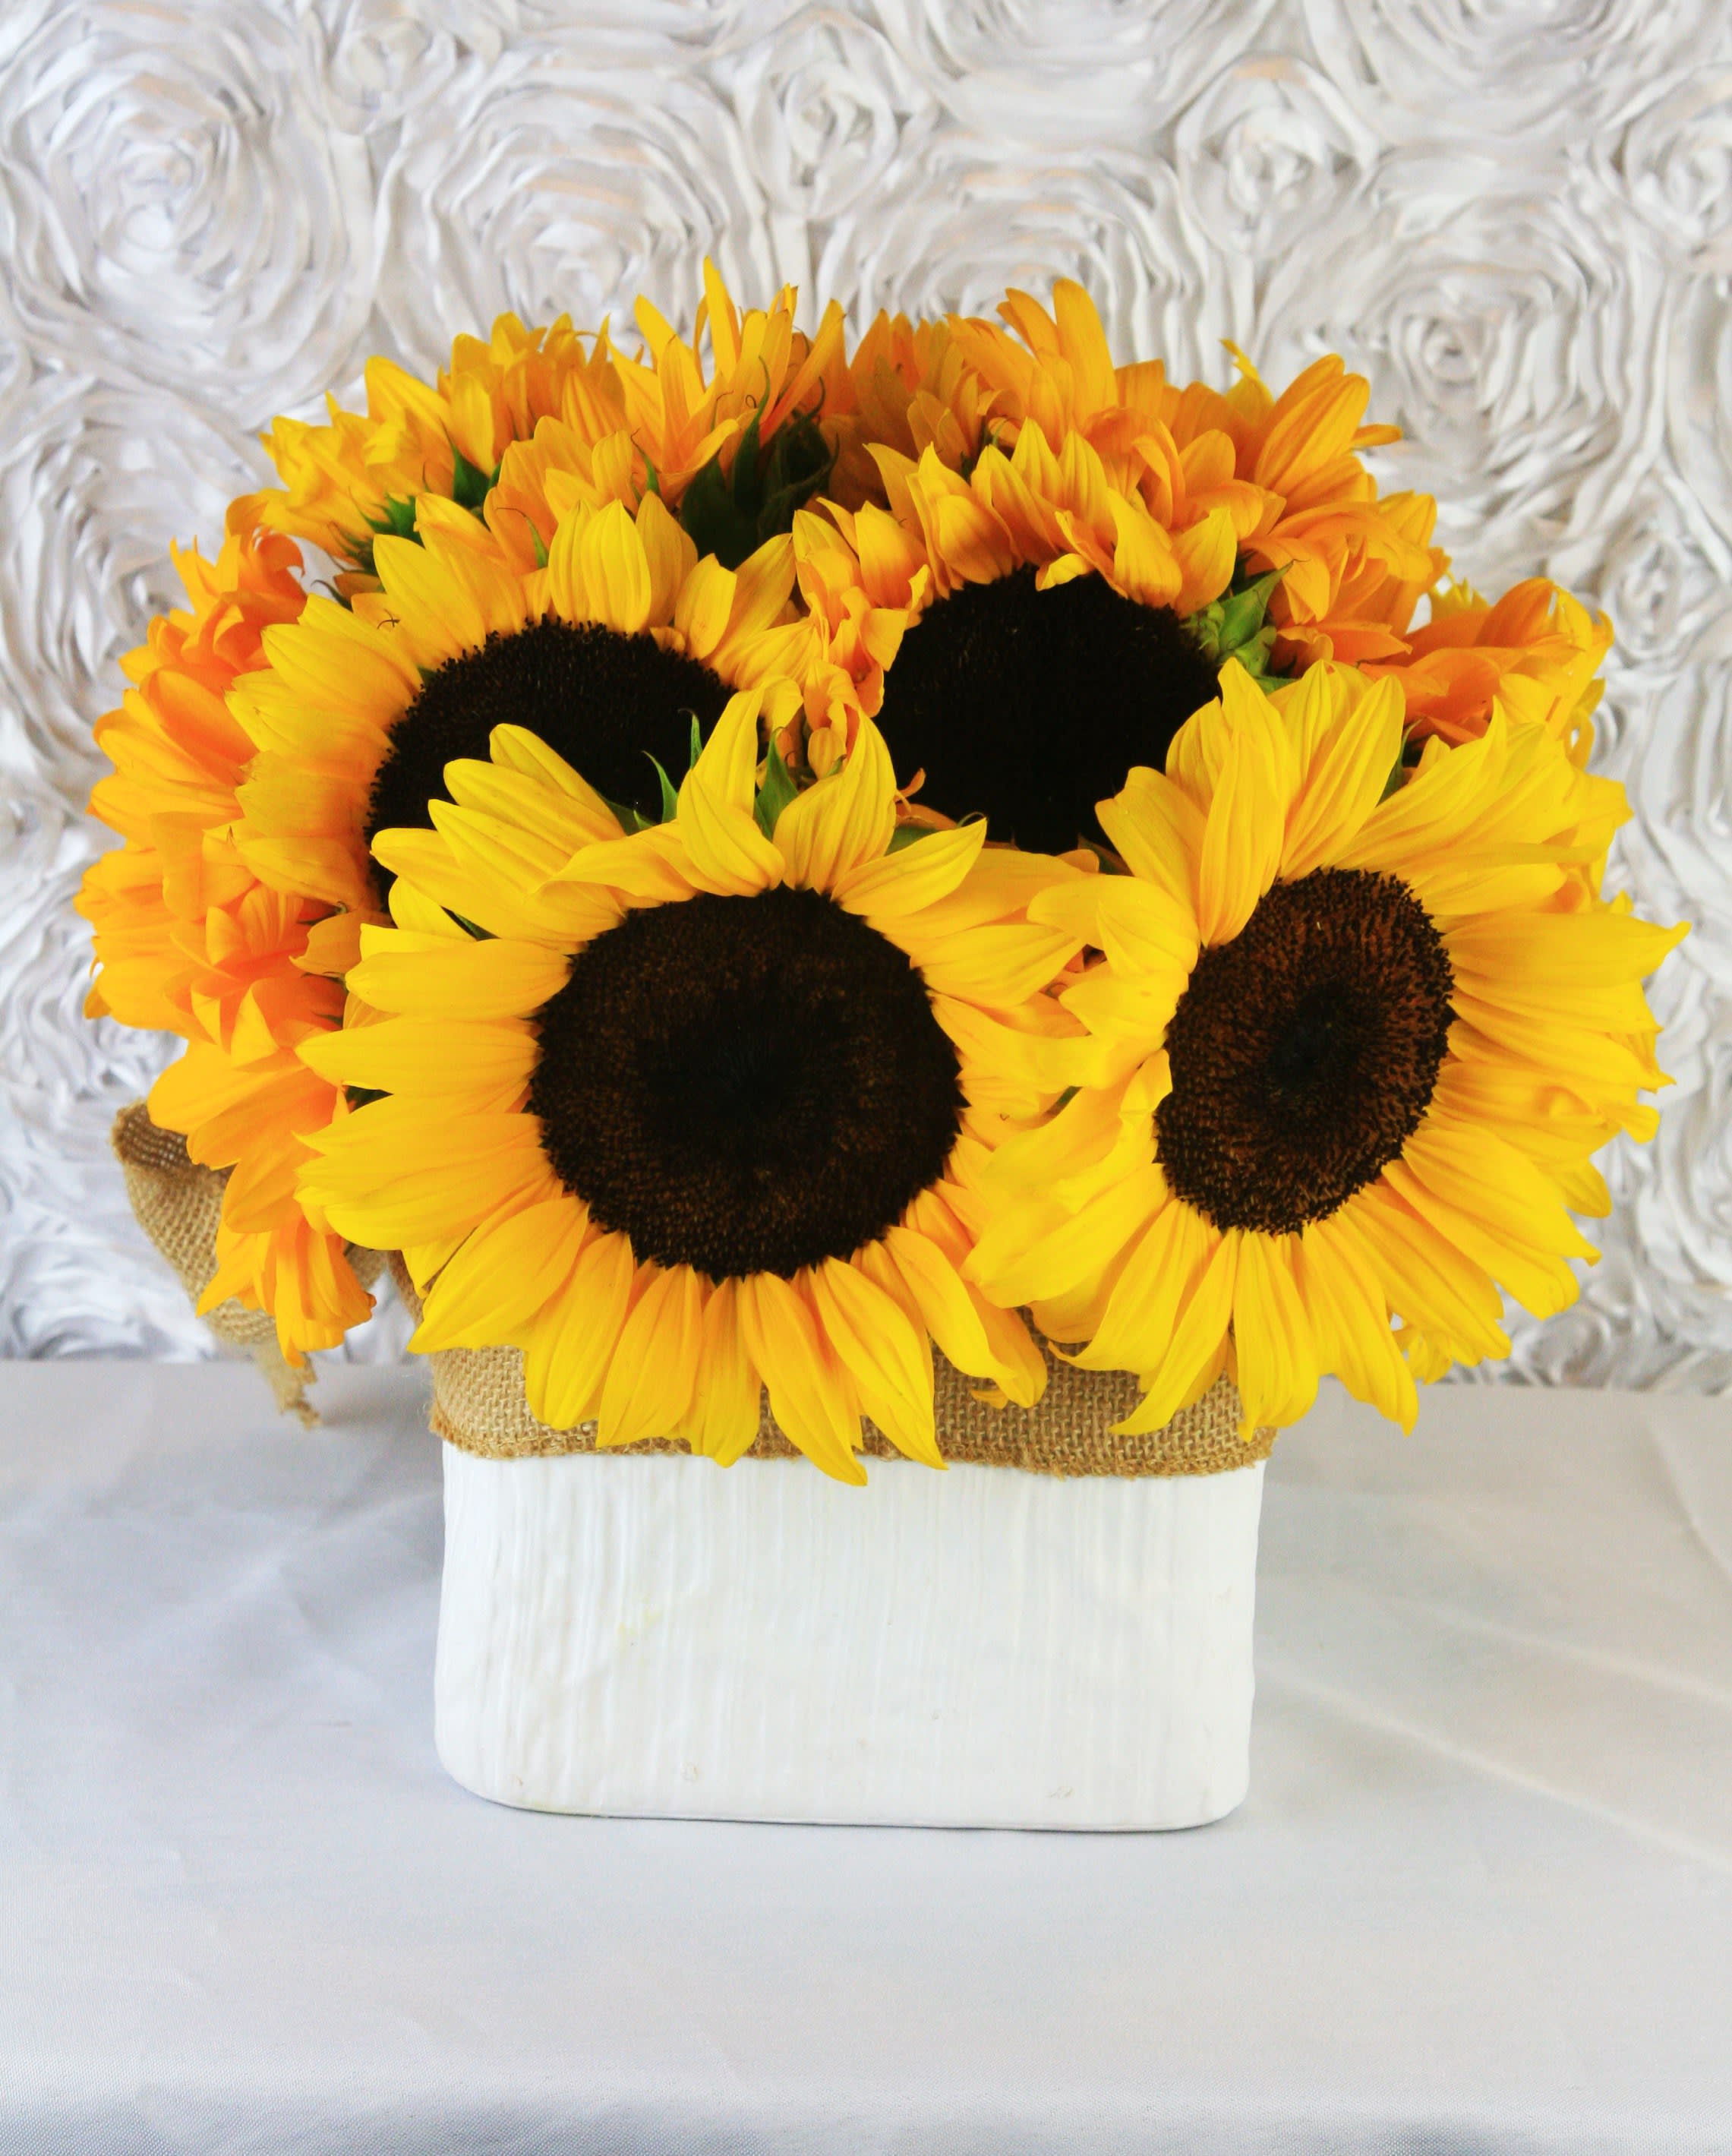 Sunflower Arrangement - Sunflowers in ceramic vase. 